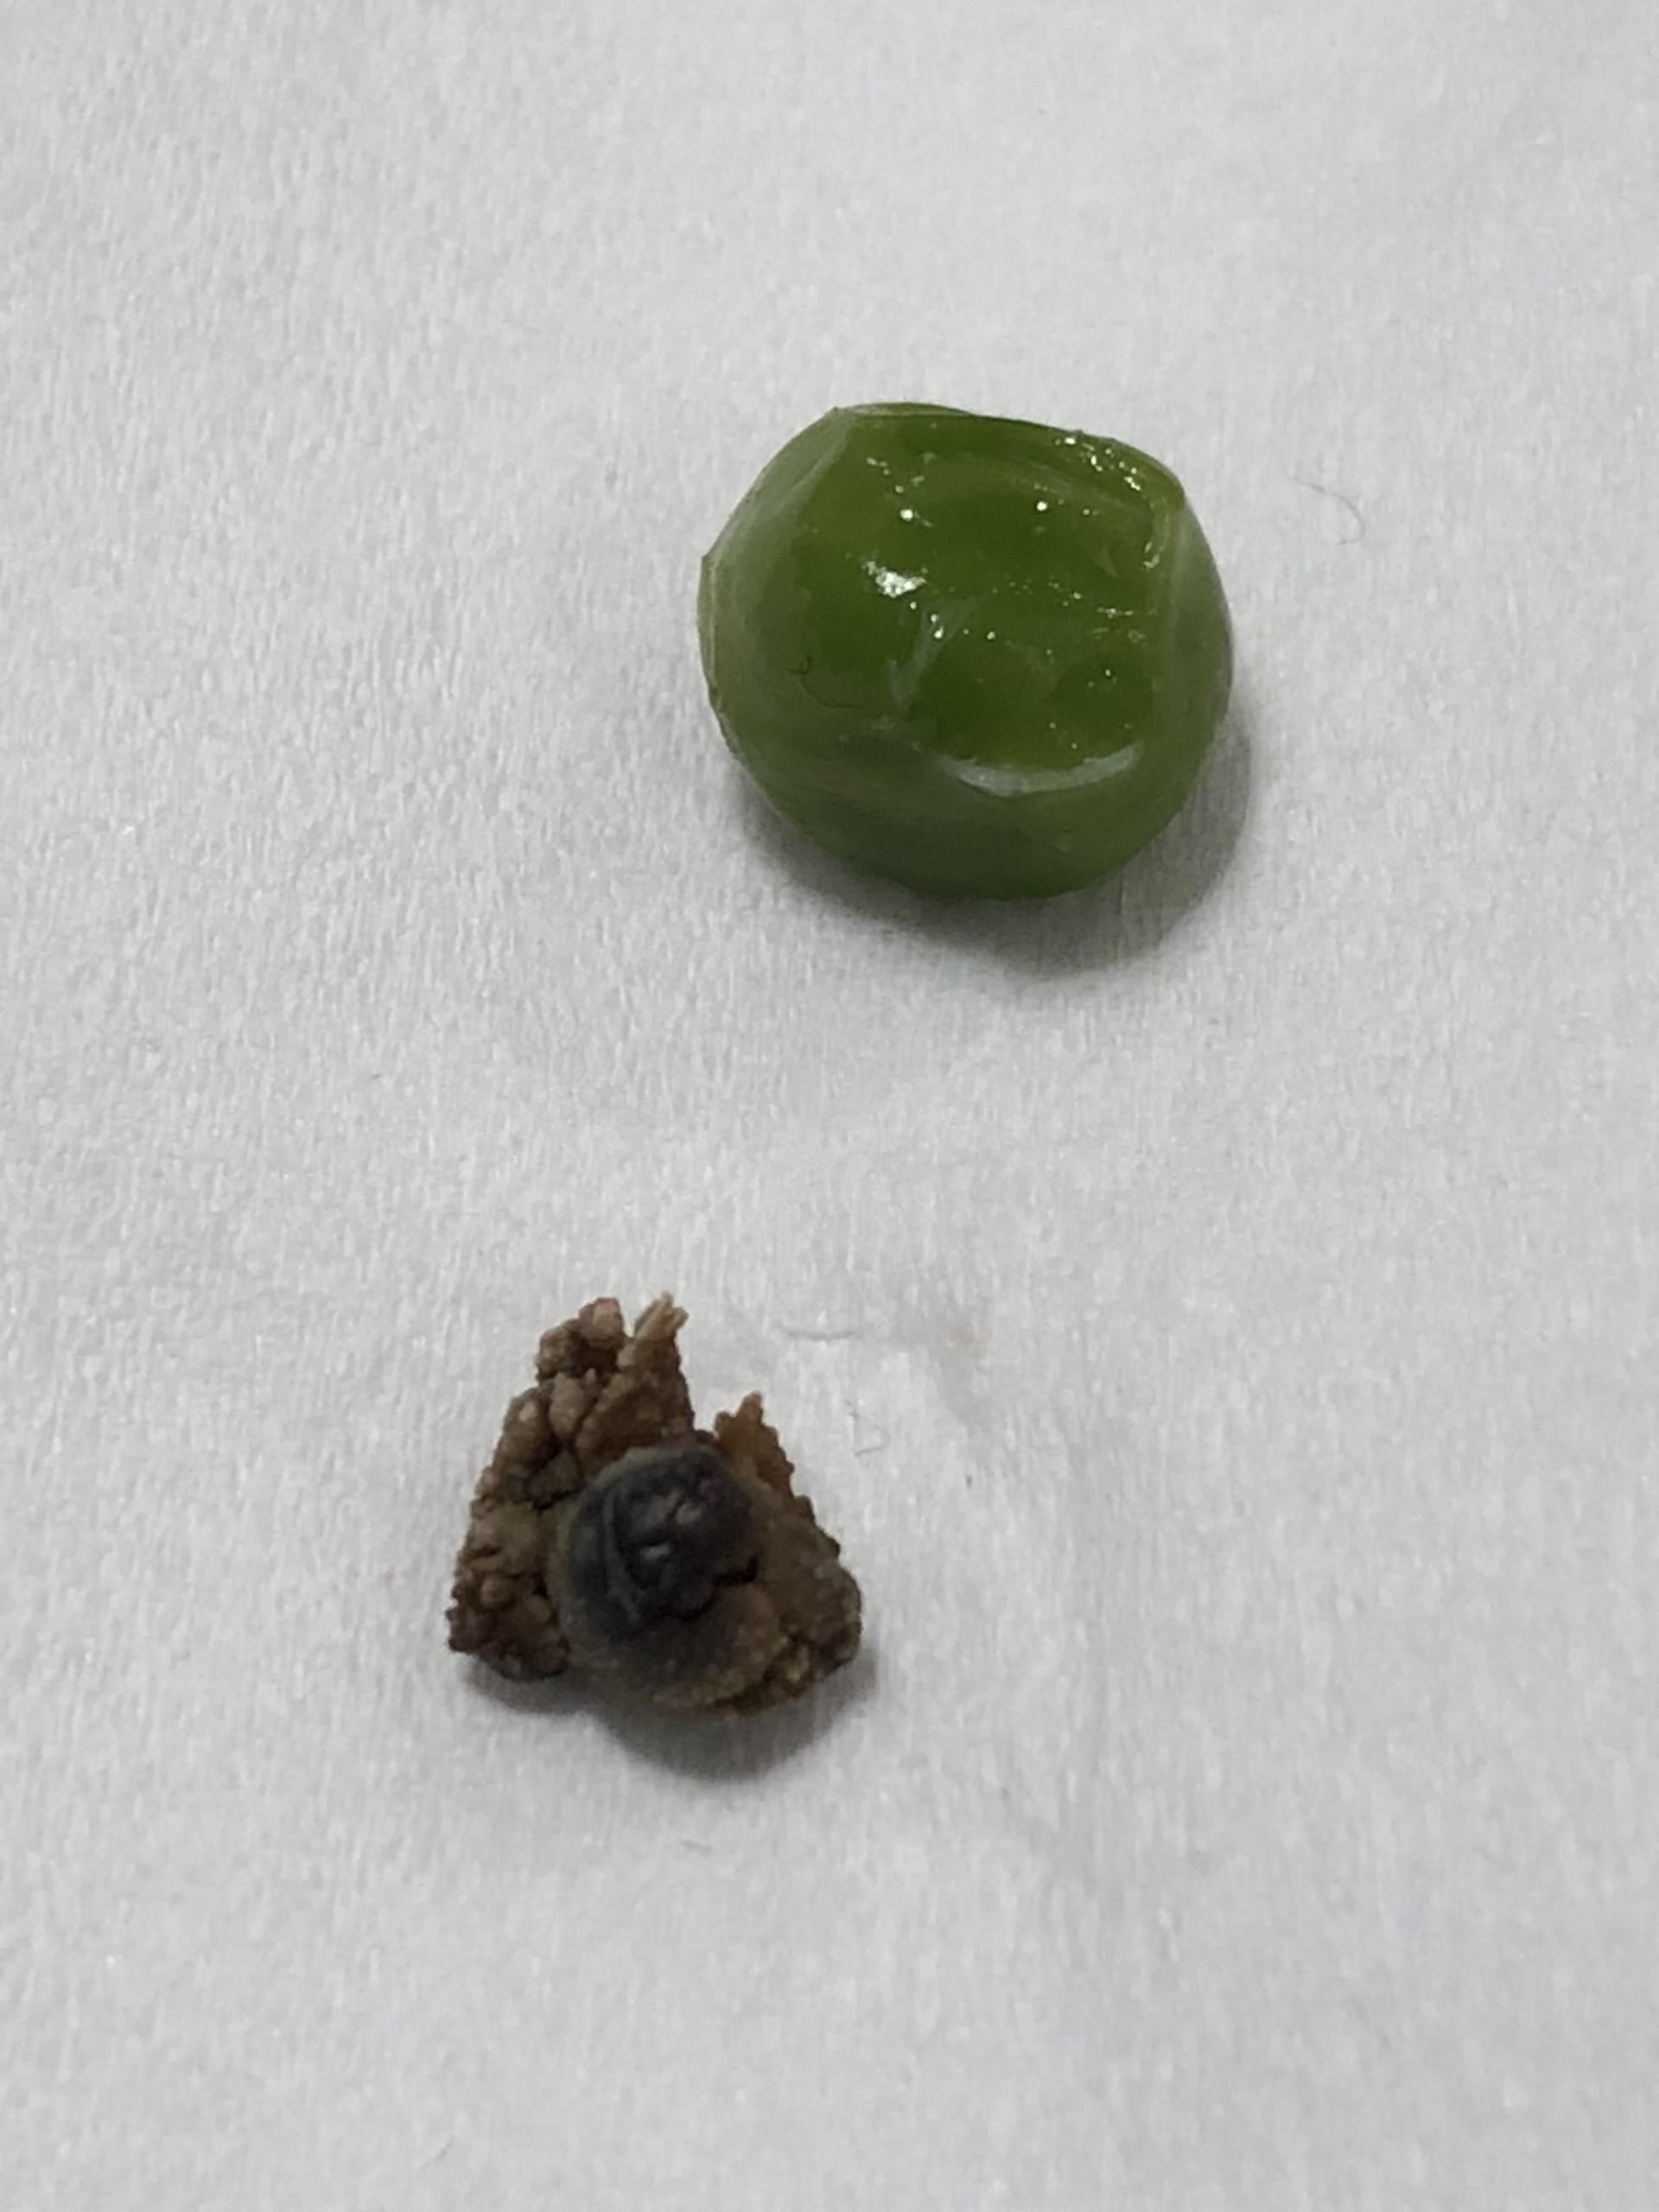 8mm Kidney Stone I passed this morning : mildlyinteresting